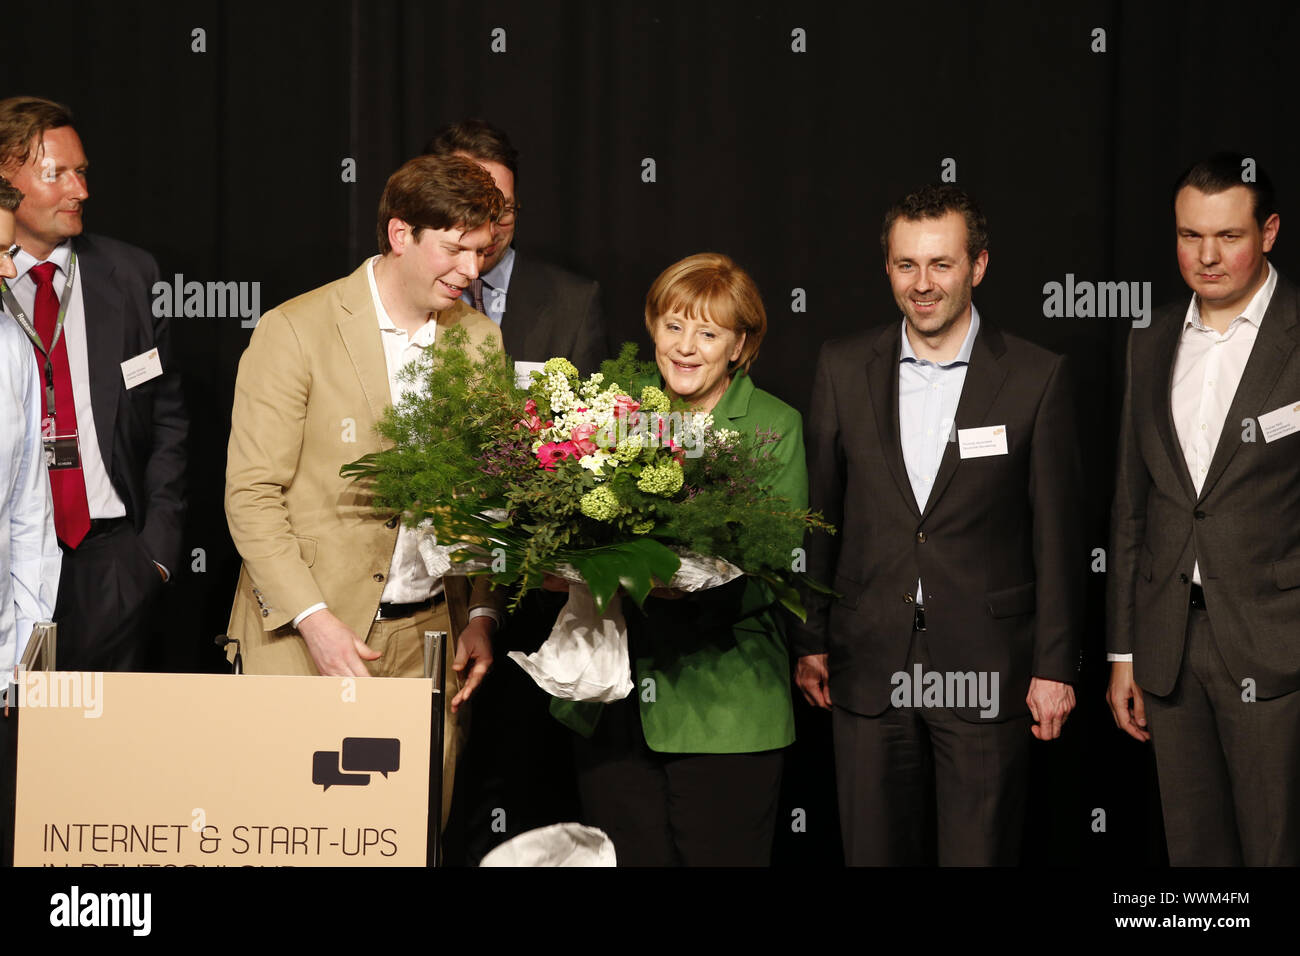 Il cancelliere Angela Merkel tiene presso la reception Internet & start-ups Foto Stock